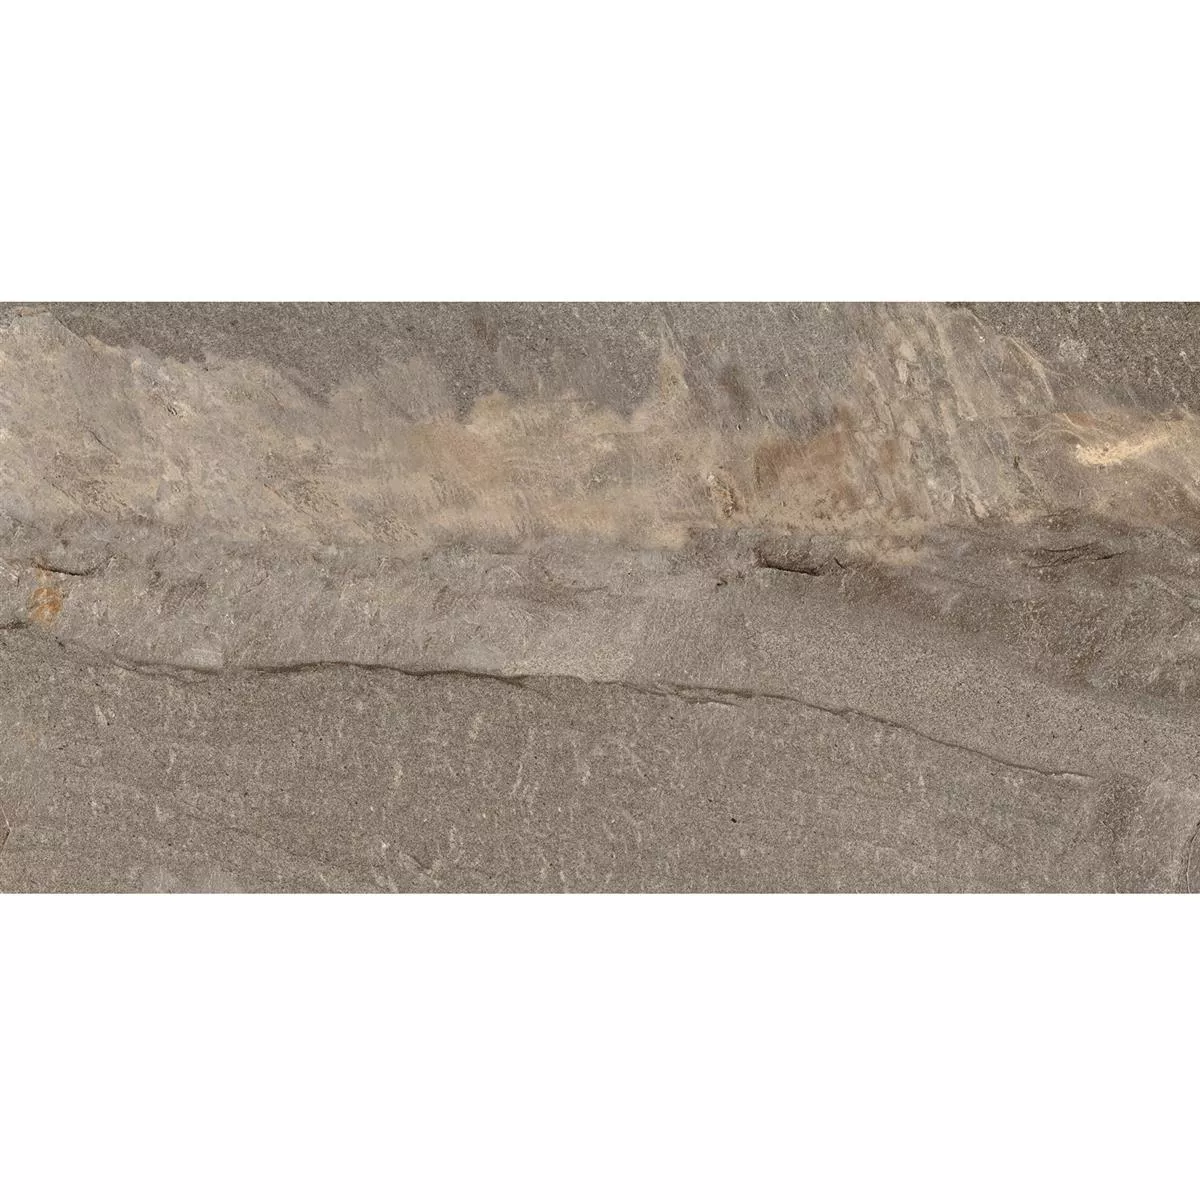 Próbka Płytki Podłogowe Homeland Kamień Naturalny Optyka R10 Brąz 30x60cm